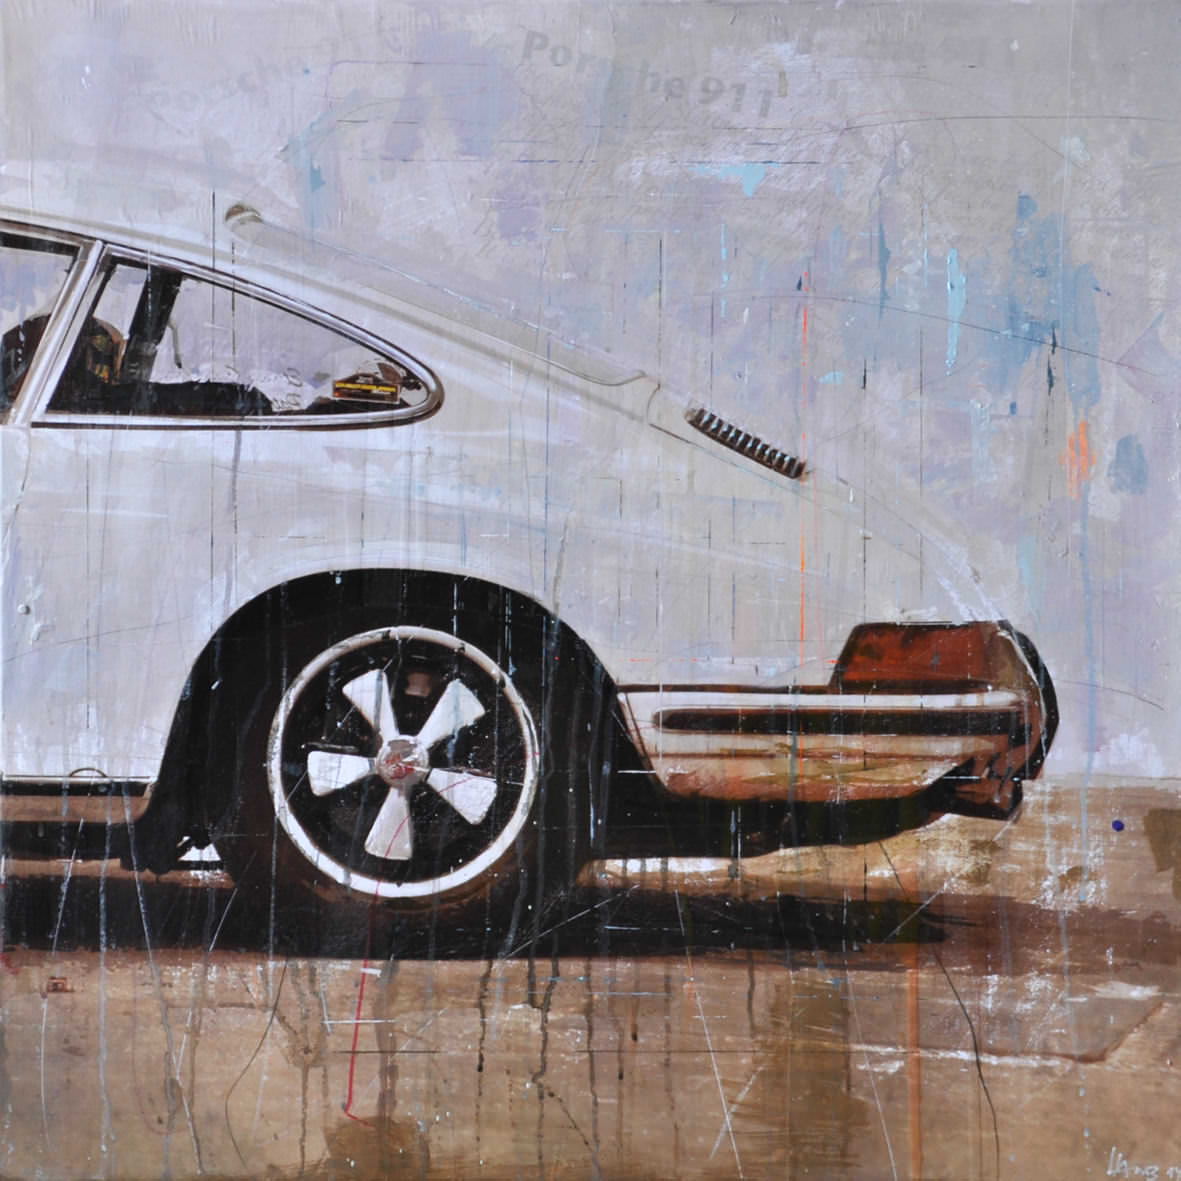 Porsche Art